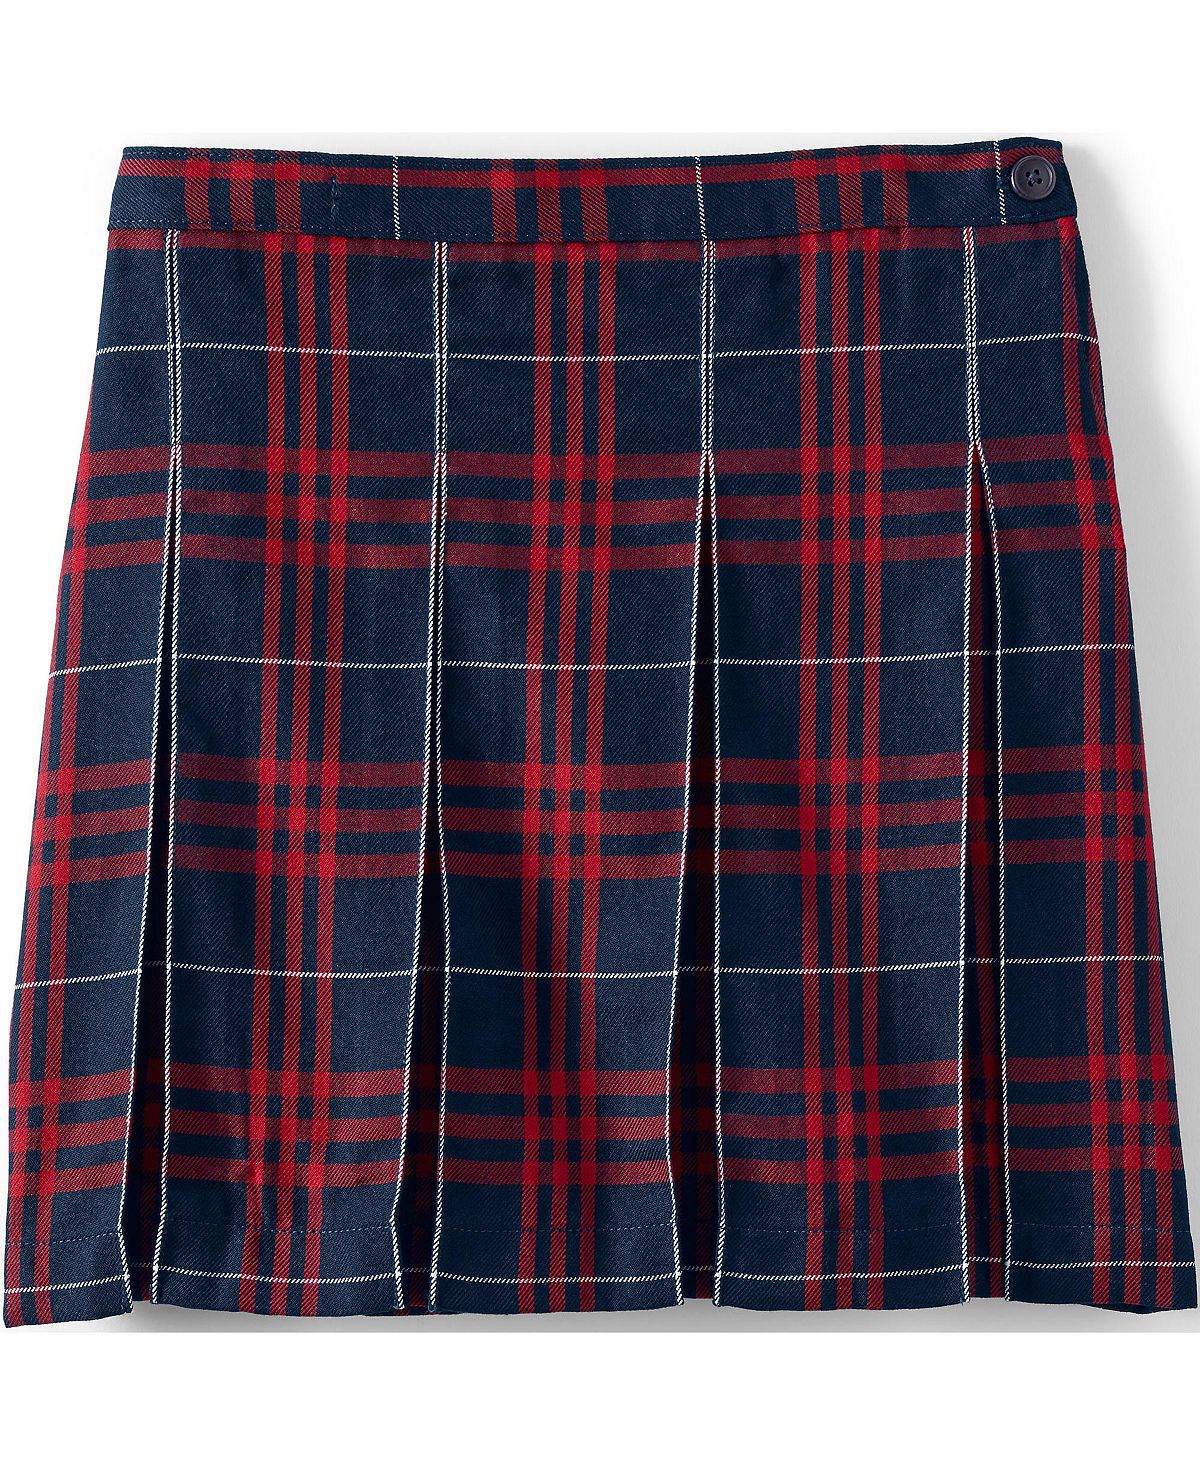 Школьная форма для девочек, детская клетчатая юбка со складками до колена Lands' End